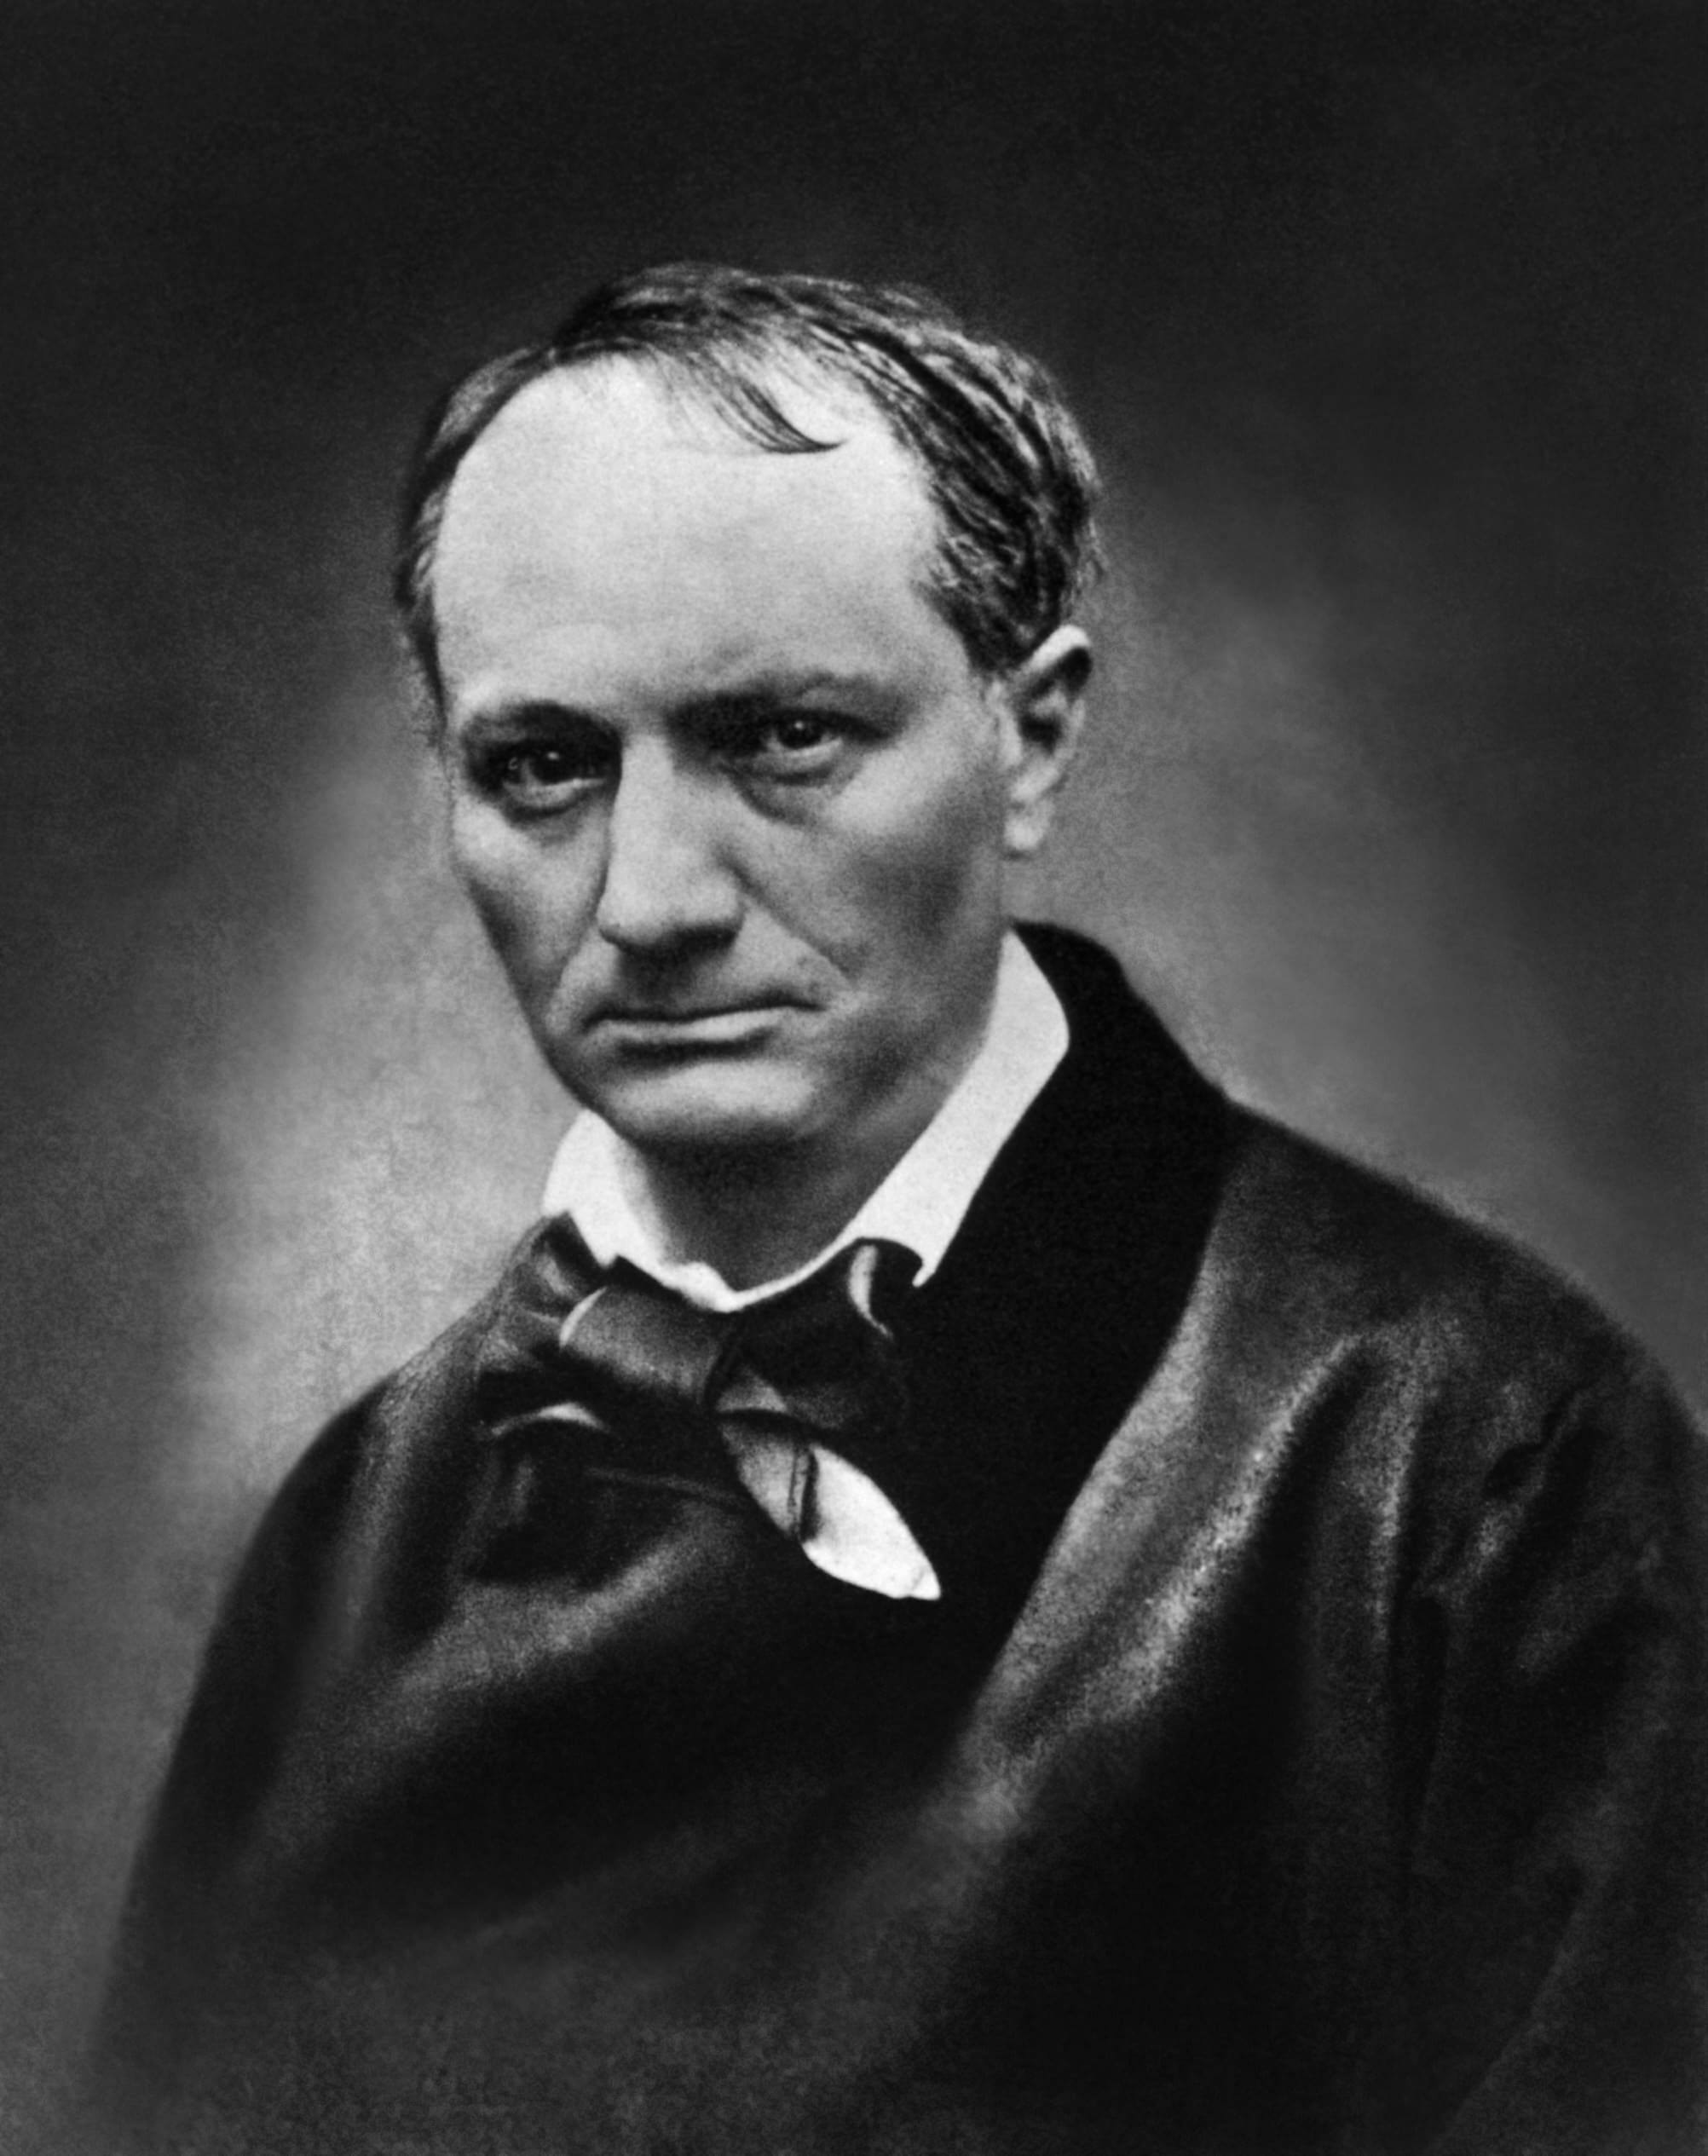  ជីវប្រវត្តិរបស់ Charles Baudelaire៖ ប្រវត្តិជីវិត កំណាព្យ និងស្នាដៃ